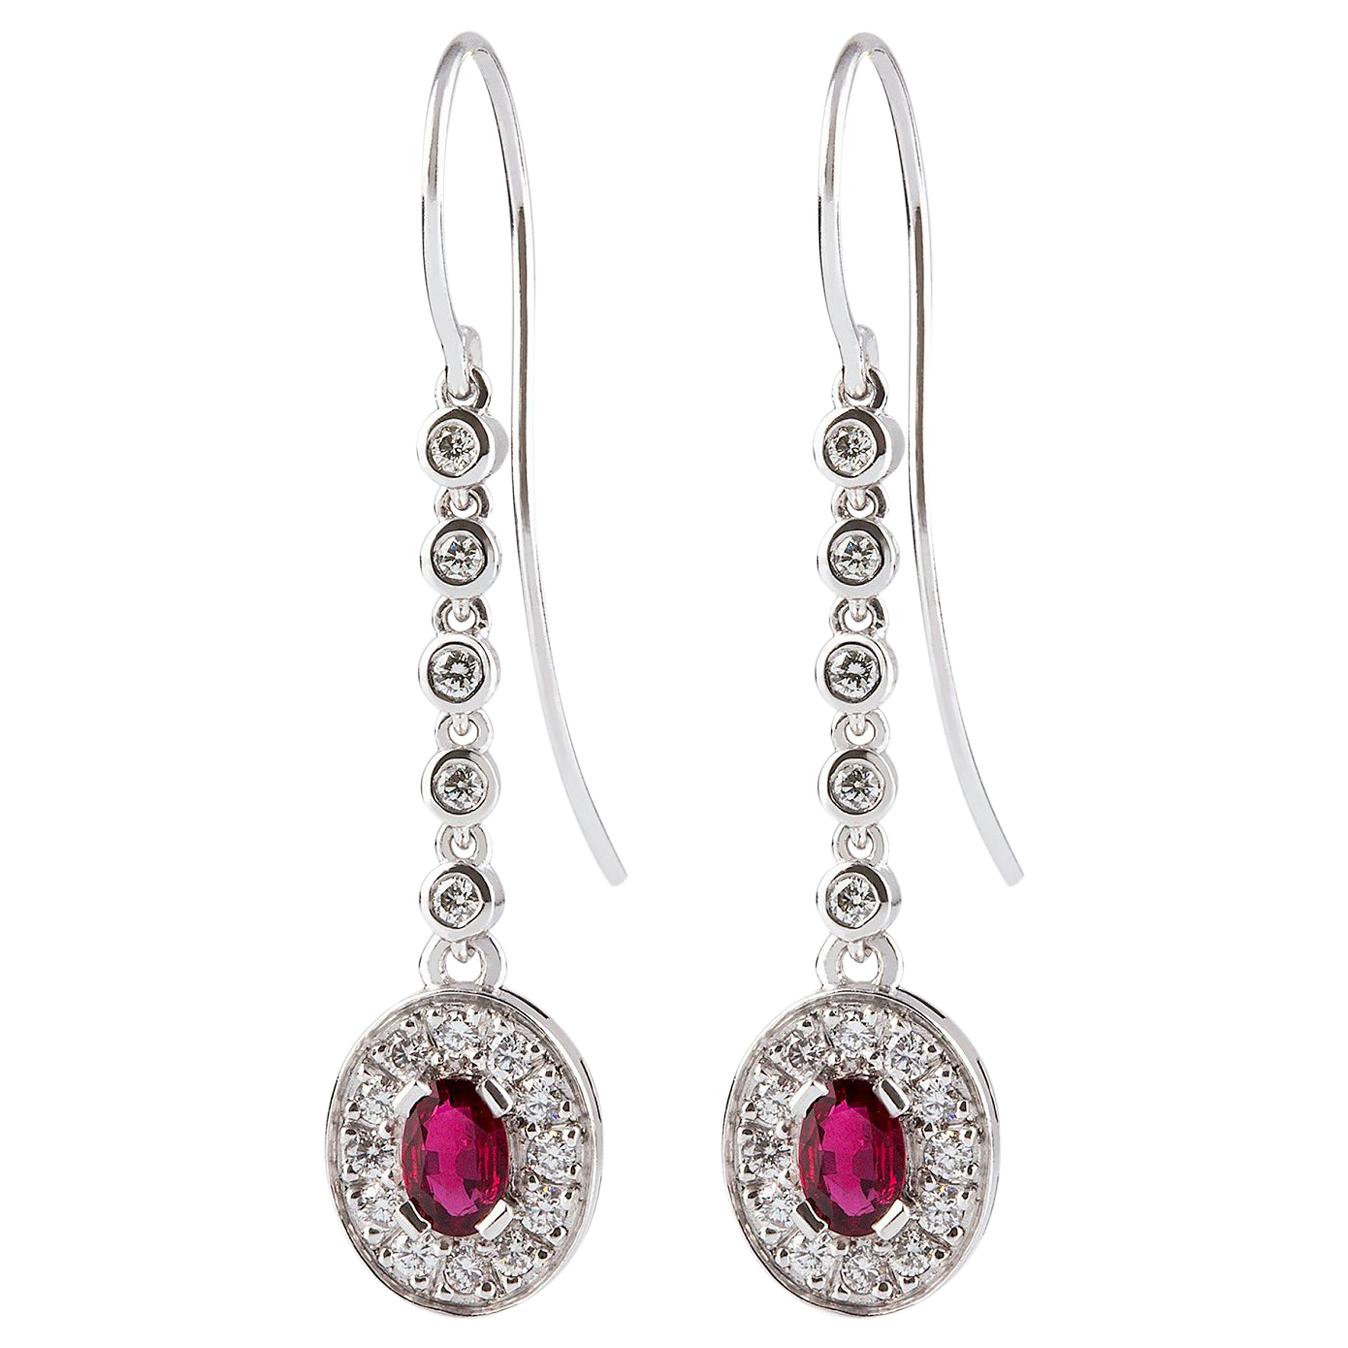 Kian Design Oval Ruby Diamond Dangle Earrings in 18 Carat White Gold